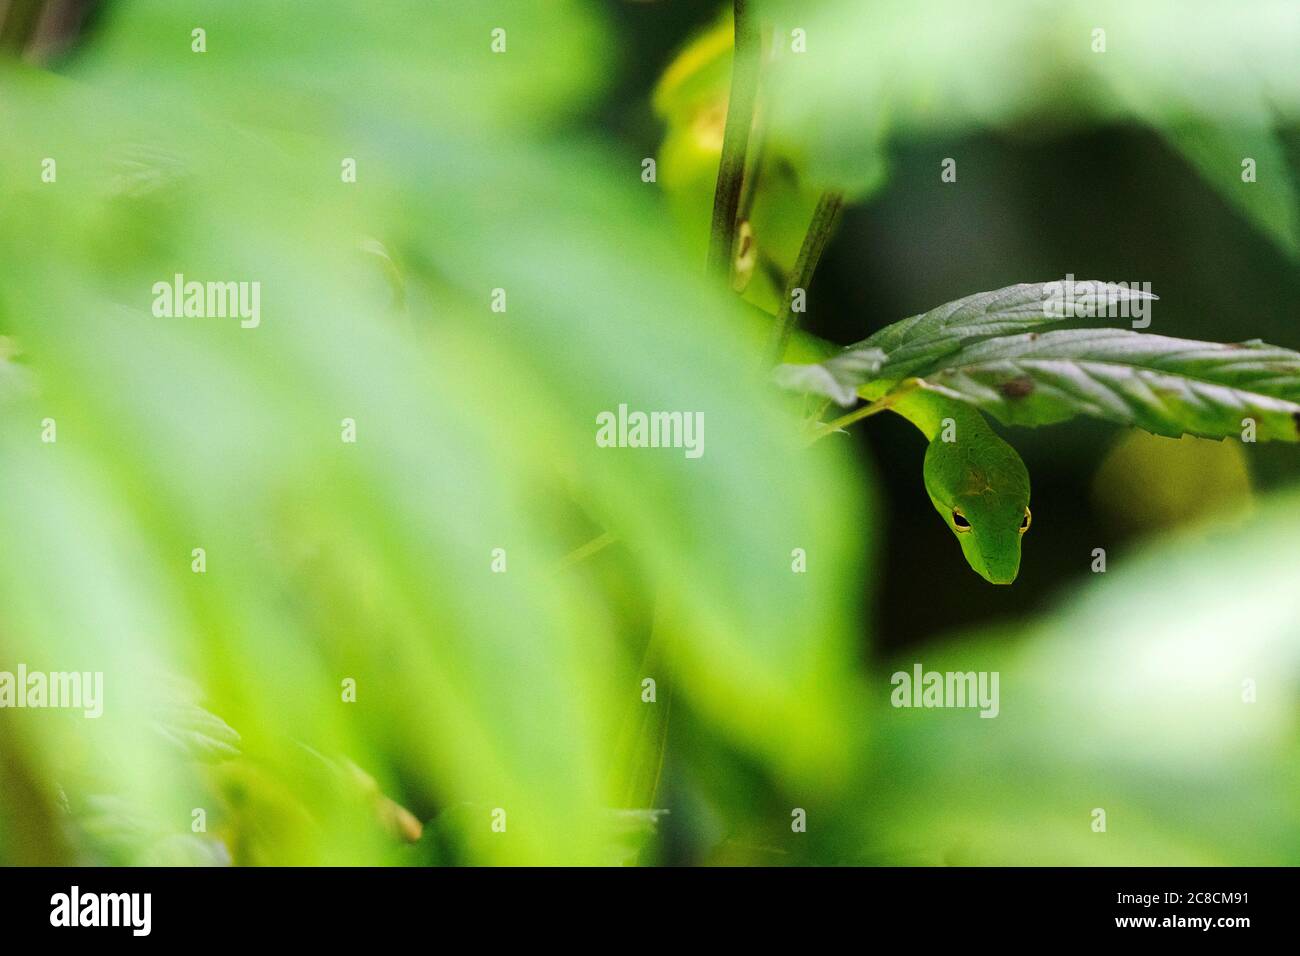 (200723) -- SINGAPUR, 23 de julio de 2020 (Xinhua) -- una serpiente látigo oriental se desliza en el arbusto en el Parque Natural de Windsor en Singapur, el 23 de julio de 2020. (Foto de entonces Chih Wey/Xinhua) Foto de stock